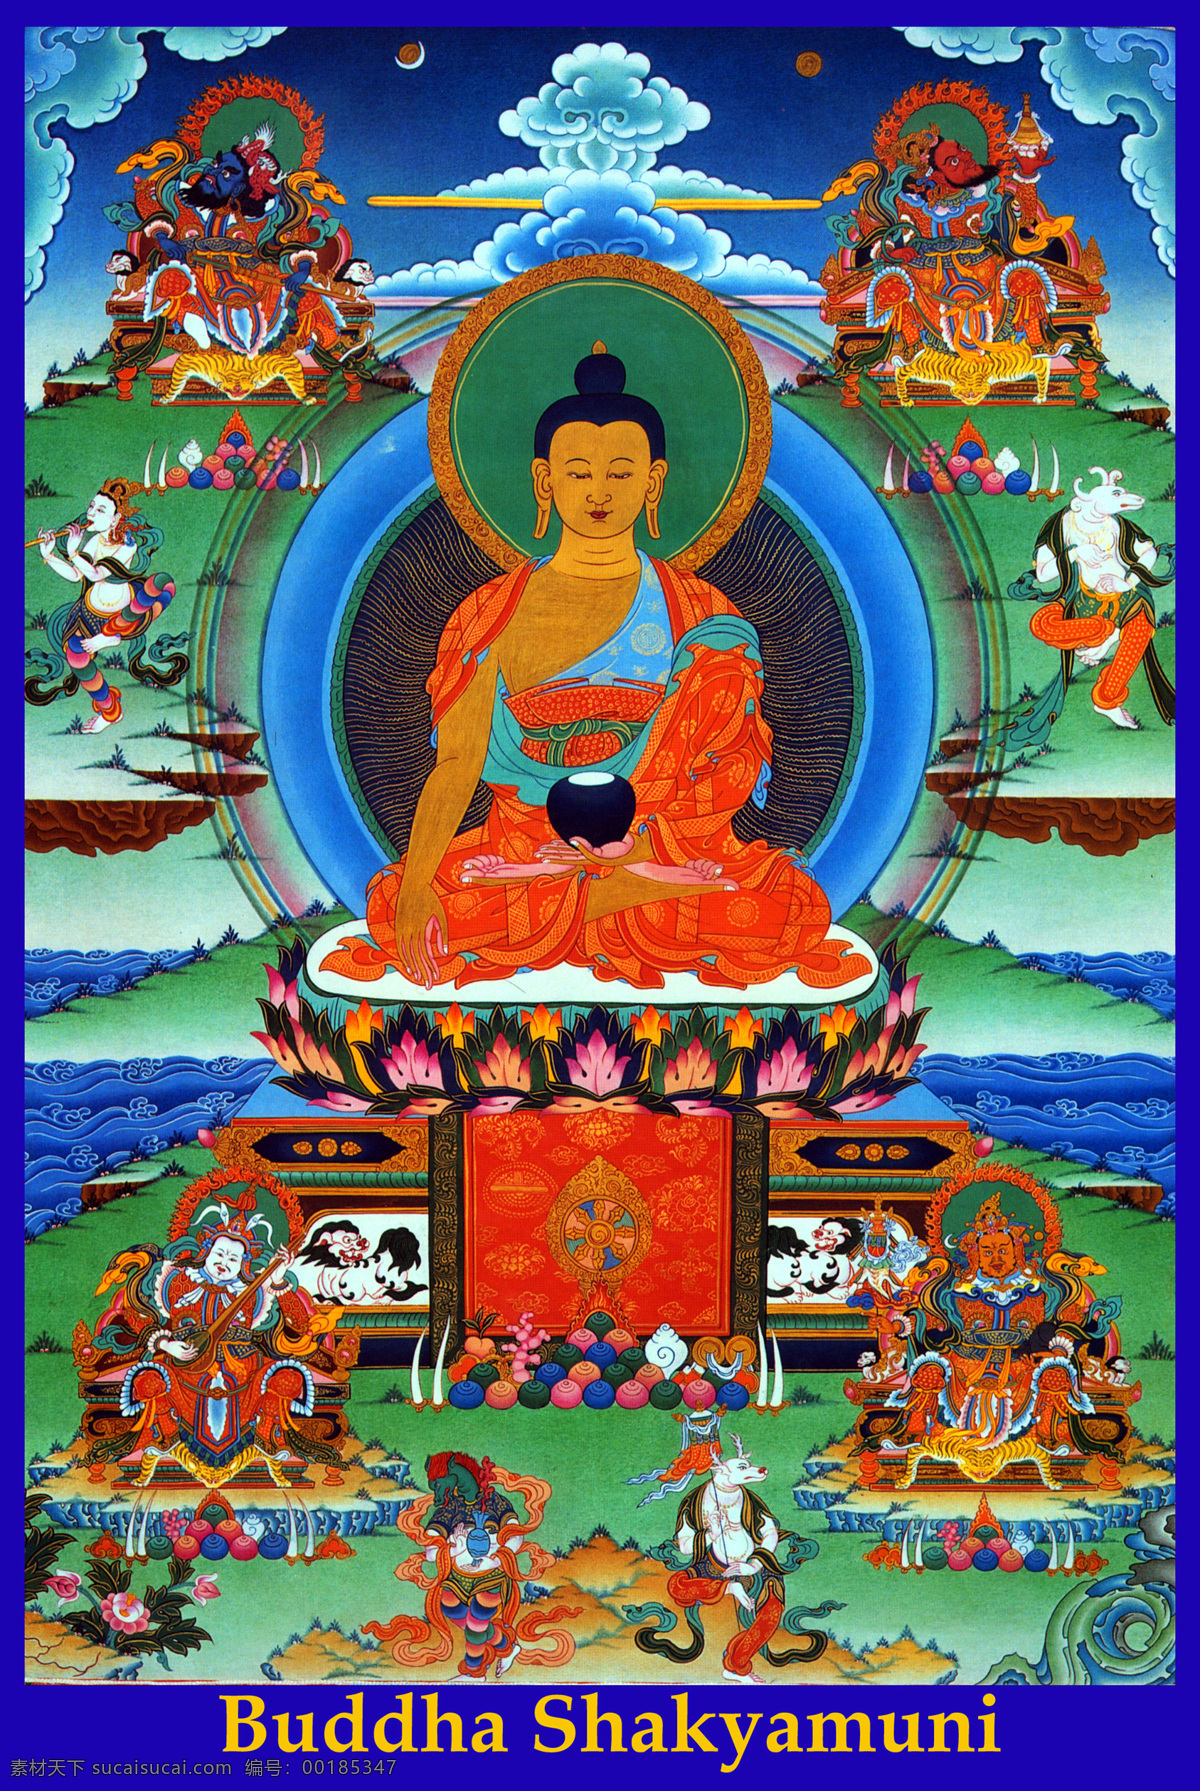 坐在 莲花 台上 菩萨 佛祖 唐卡 彩绘 佛教 宗教 信仰 卷轴画 书画文字 文化艺术